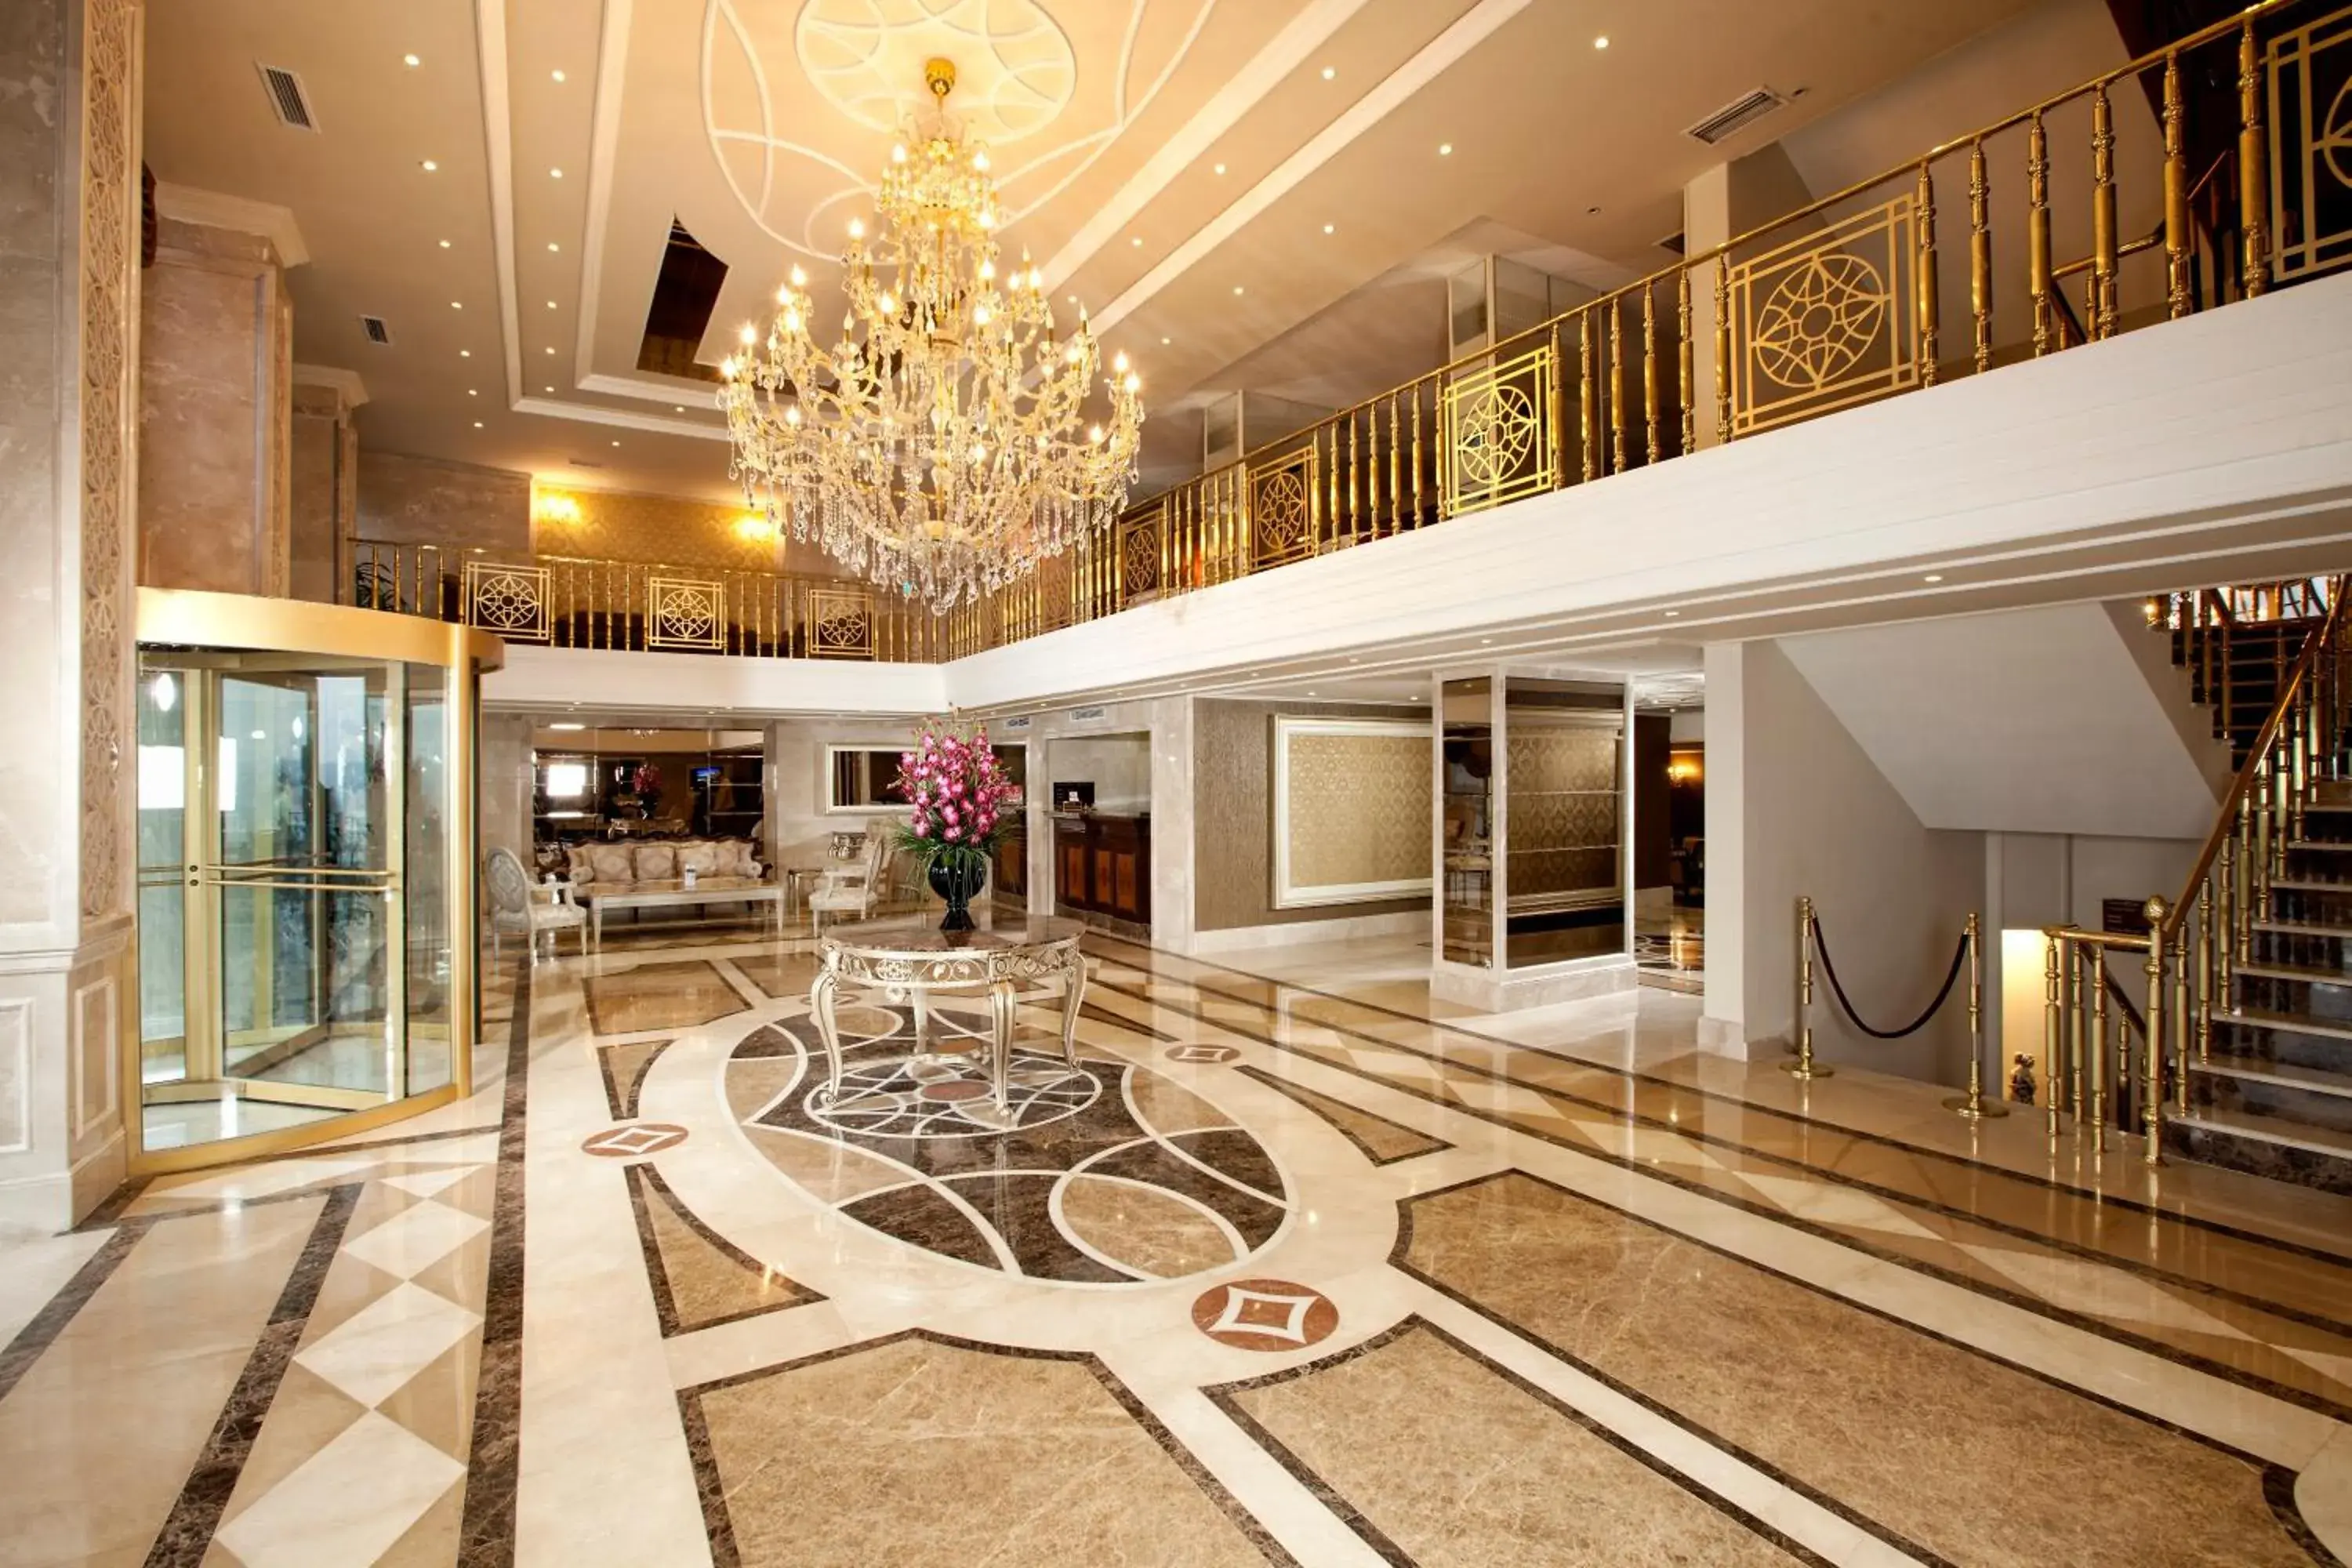 Lobby or reception, Lobby/Reception in Grand Hotel Halic